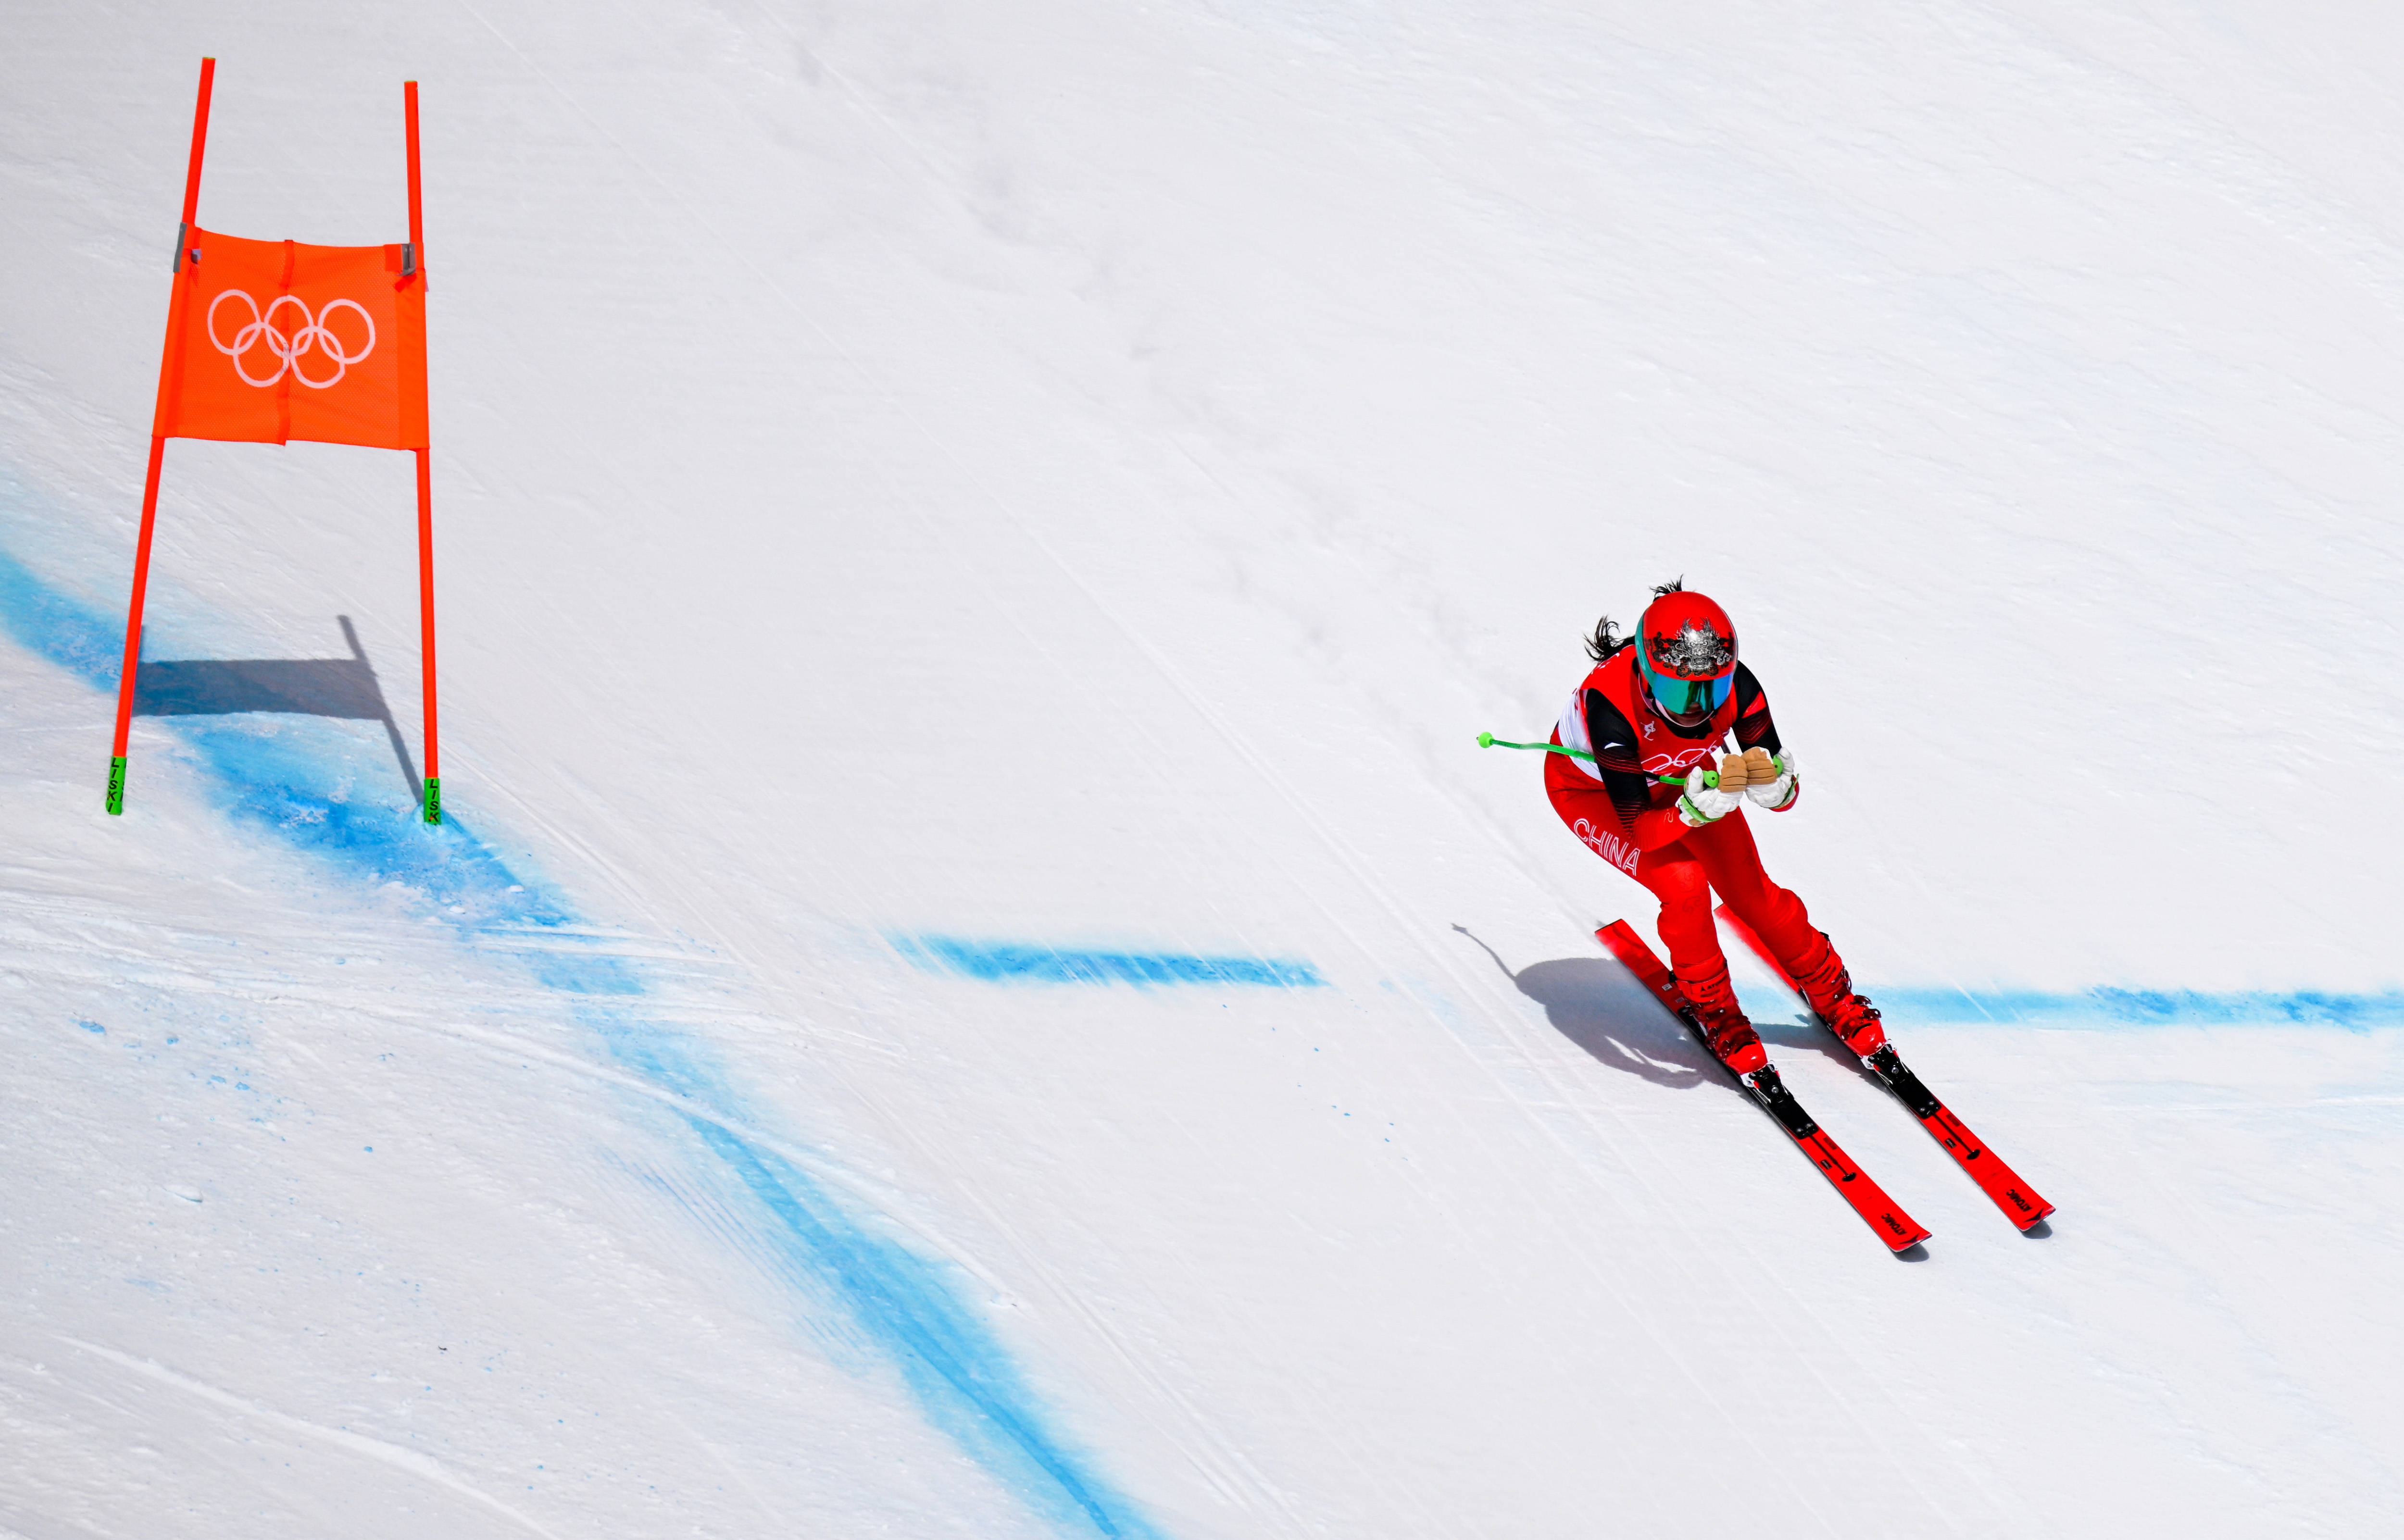 新华社记者 连振 摄当日,北京2022年冬奥会高山滑雪女子滑降项目比赛